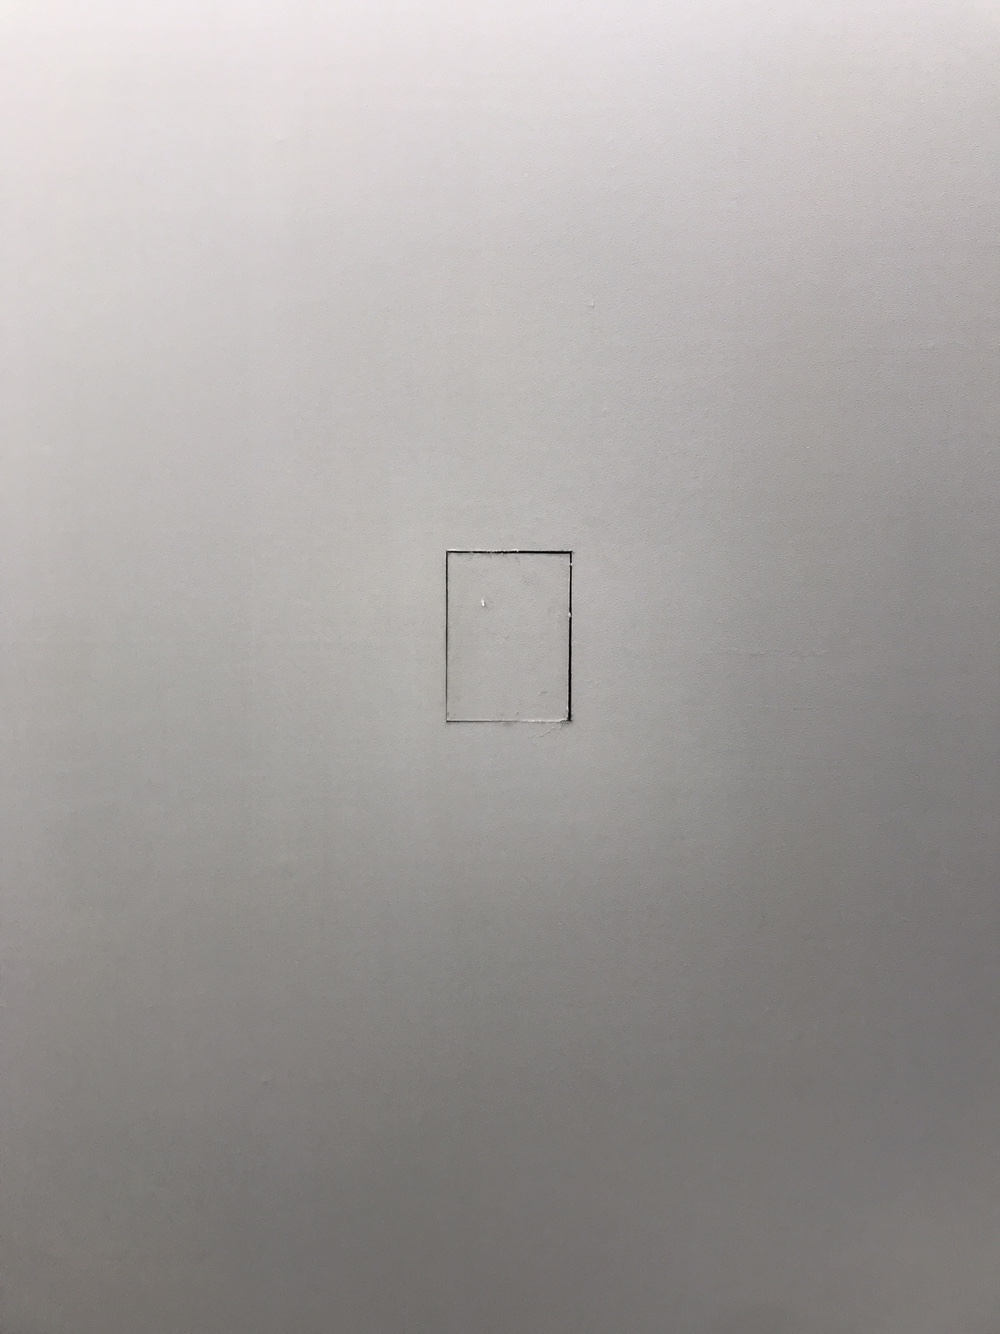 회전회화(Revolving painting) 컷팅된 전시장벽면 뒤면 위에 실리콘(Silicone on the cutted exhibit) 25.8 x 17.9 cm 2019